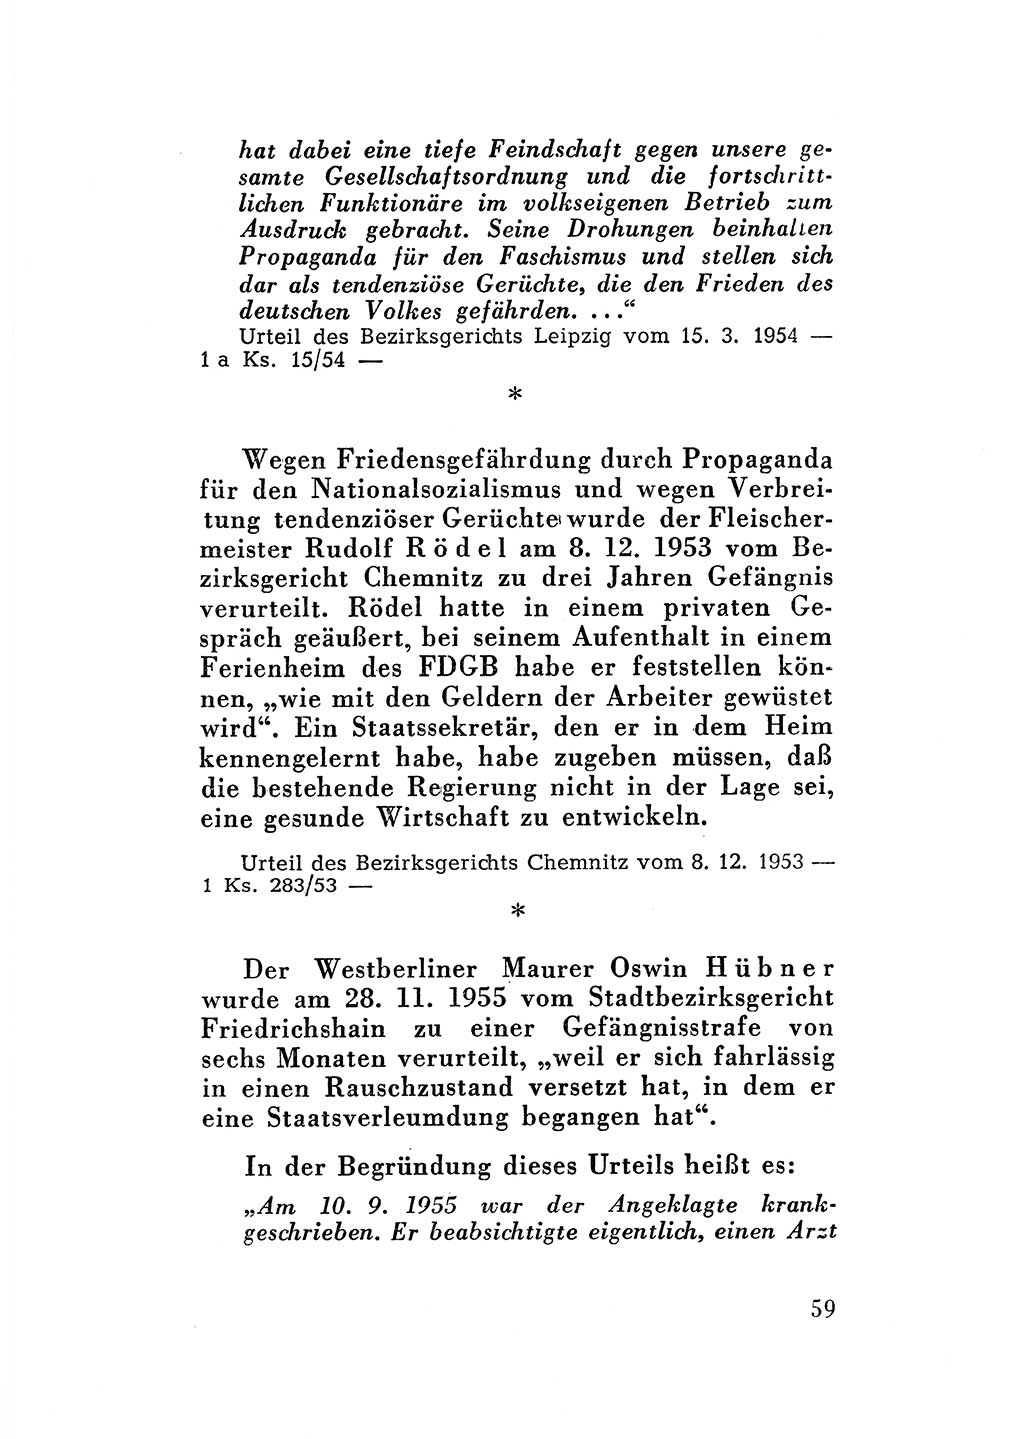 Katalog des Unrechts, Untersuchungsausschuß Freiheitlicher Juristen (UfJ) [Bundesrepublik Deutschland (BRD)] 1956, Seite 59 (Kat. UnR. UfJ BRD 1956, S. 59)